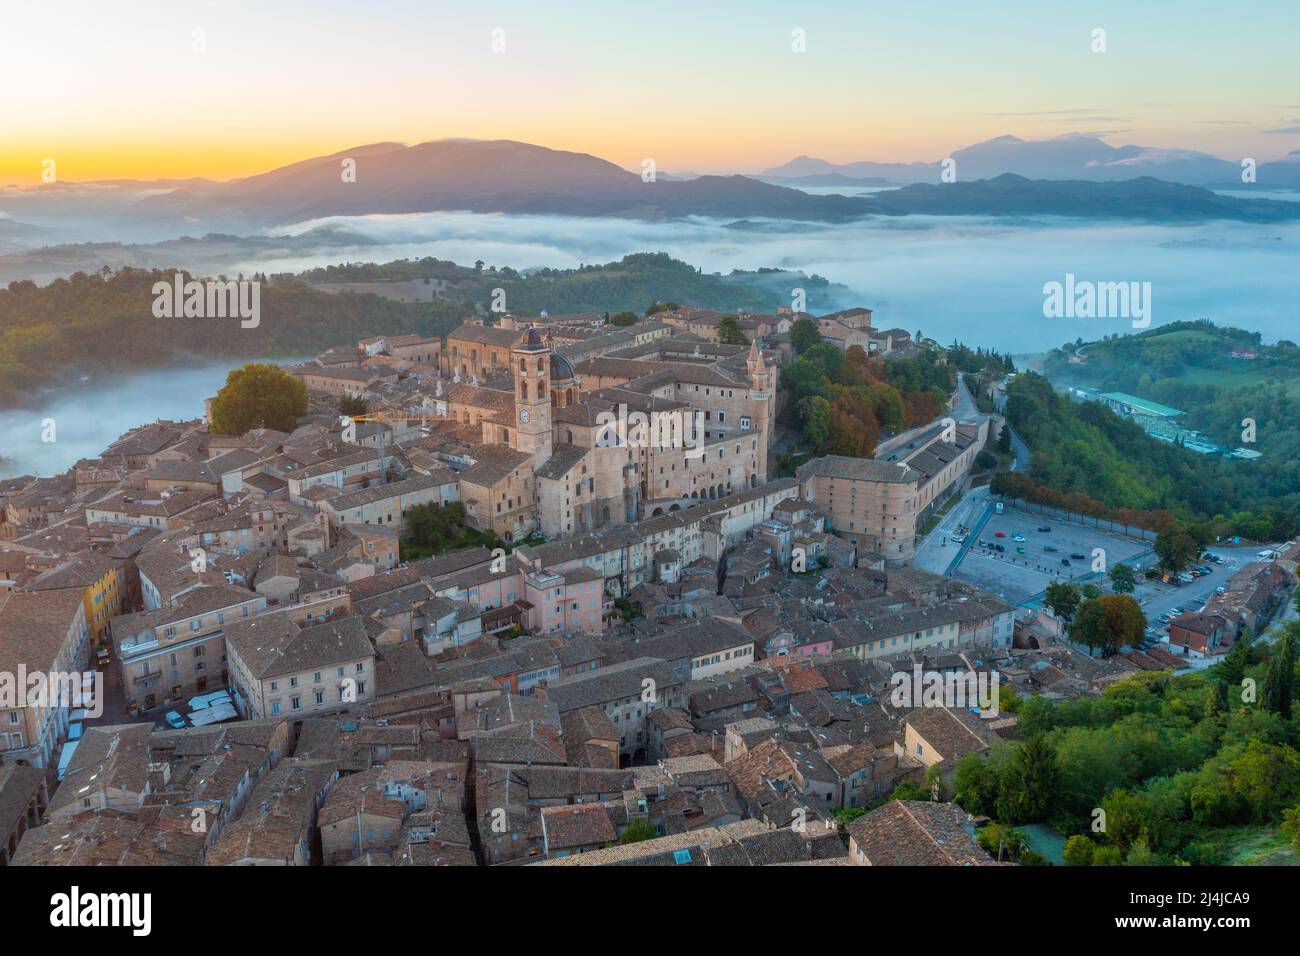 Sunrise view over Italian town Urbino. Stock Photo